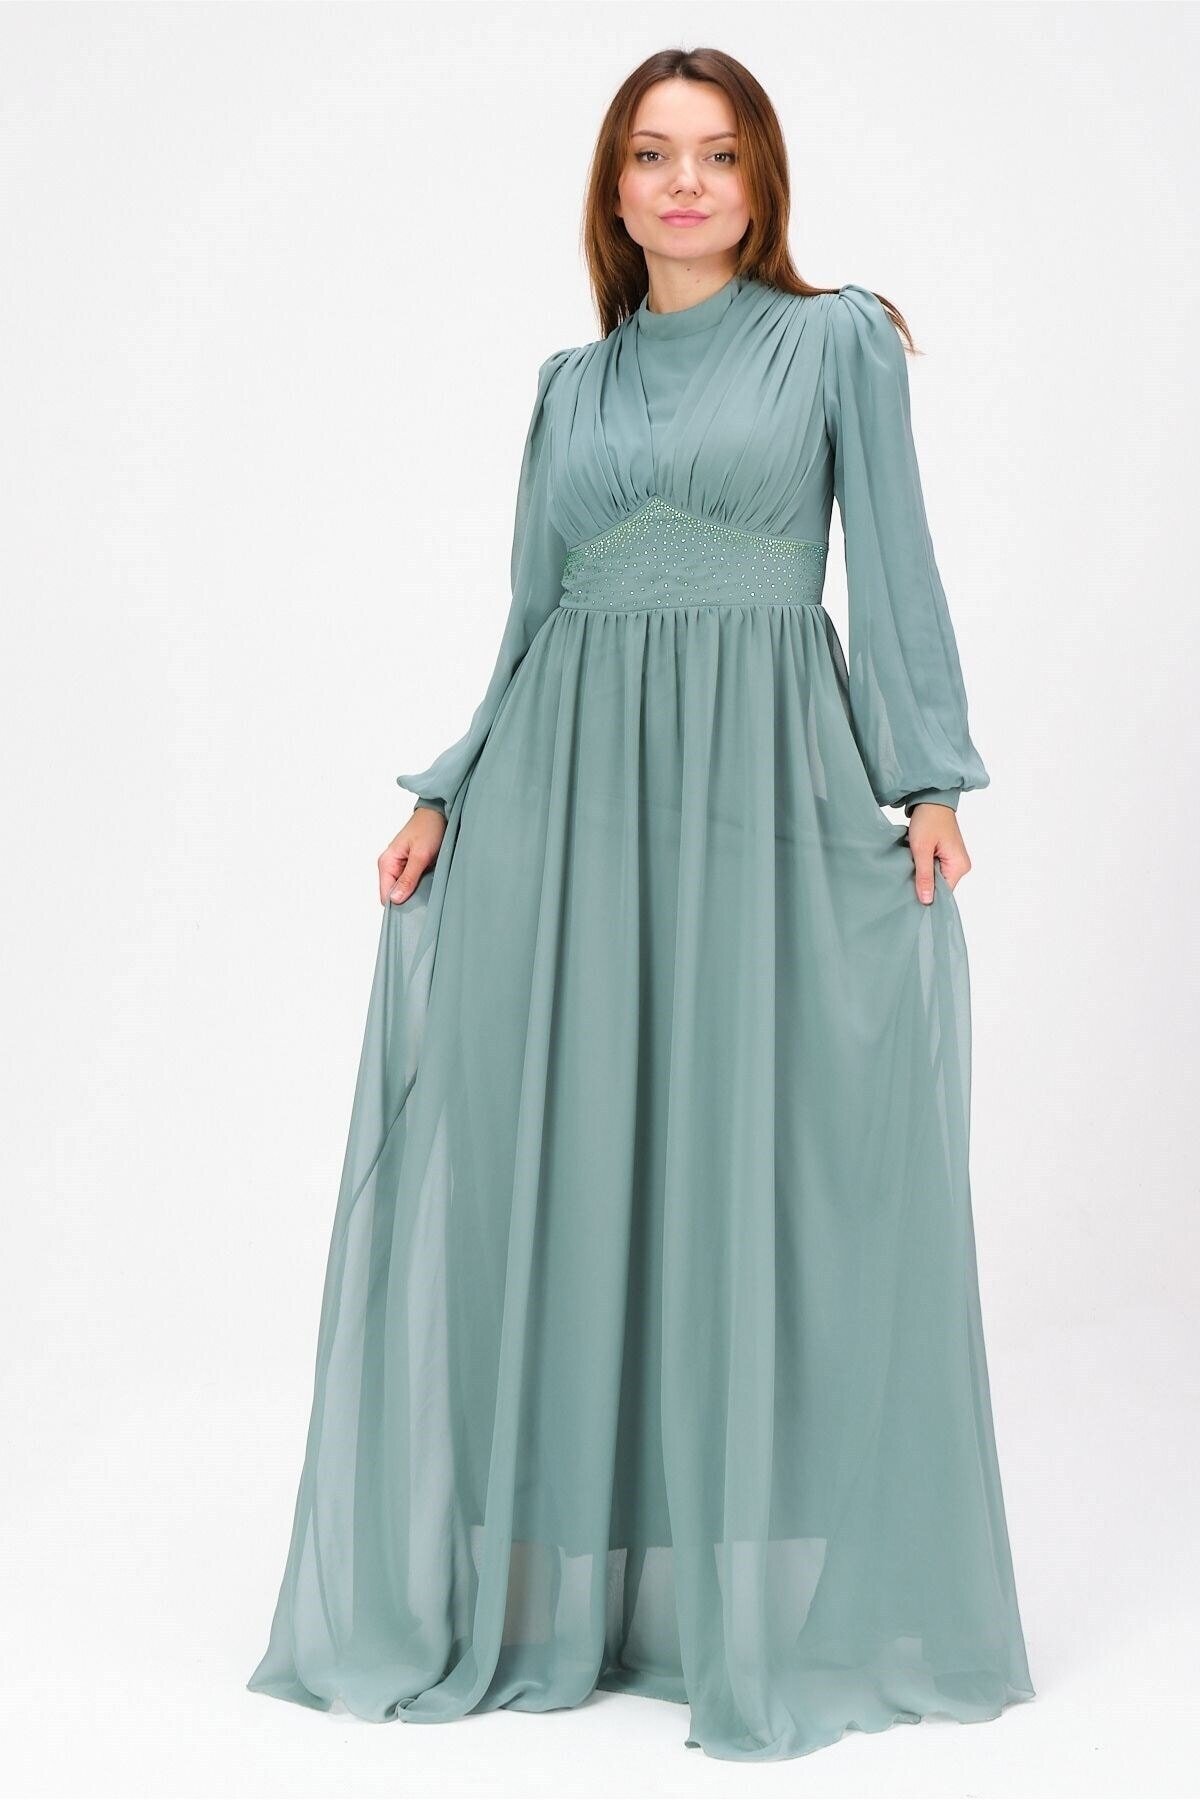 Mylace Küf Yeşili Beli Taş İşlemeli Pile Detaylı Şifon Abiye Elbise